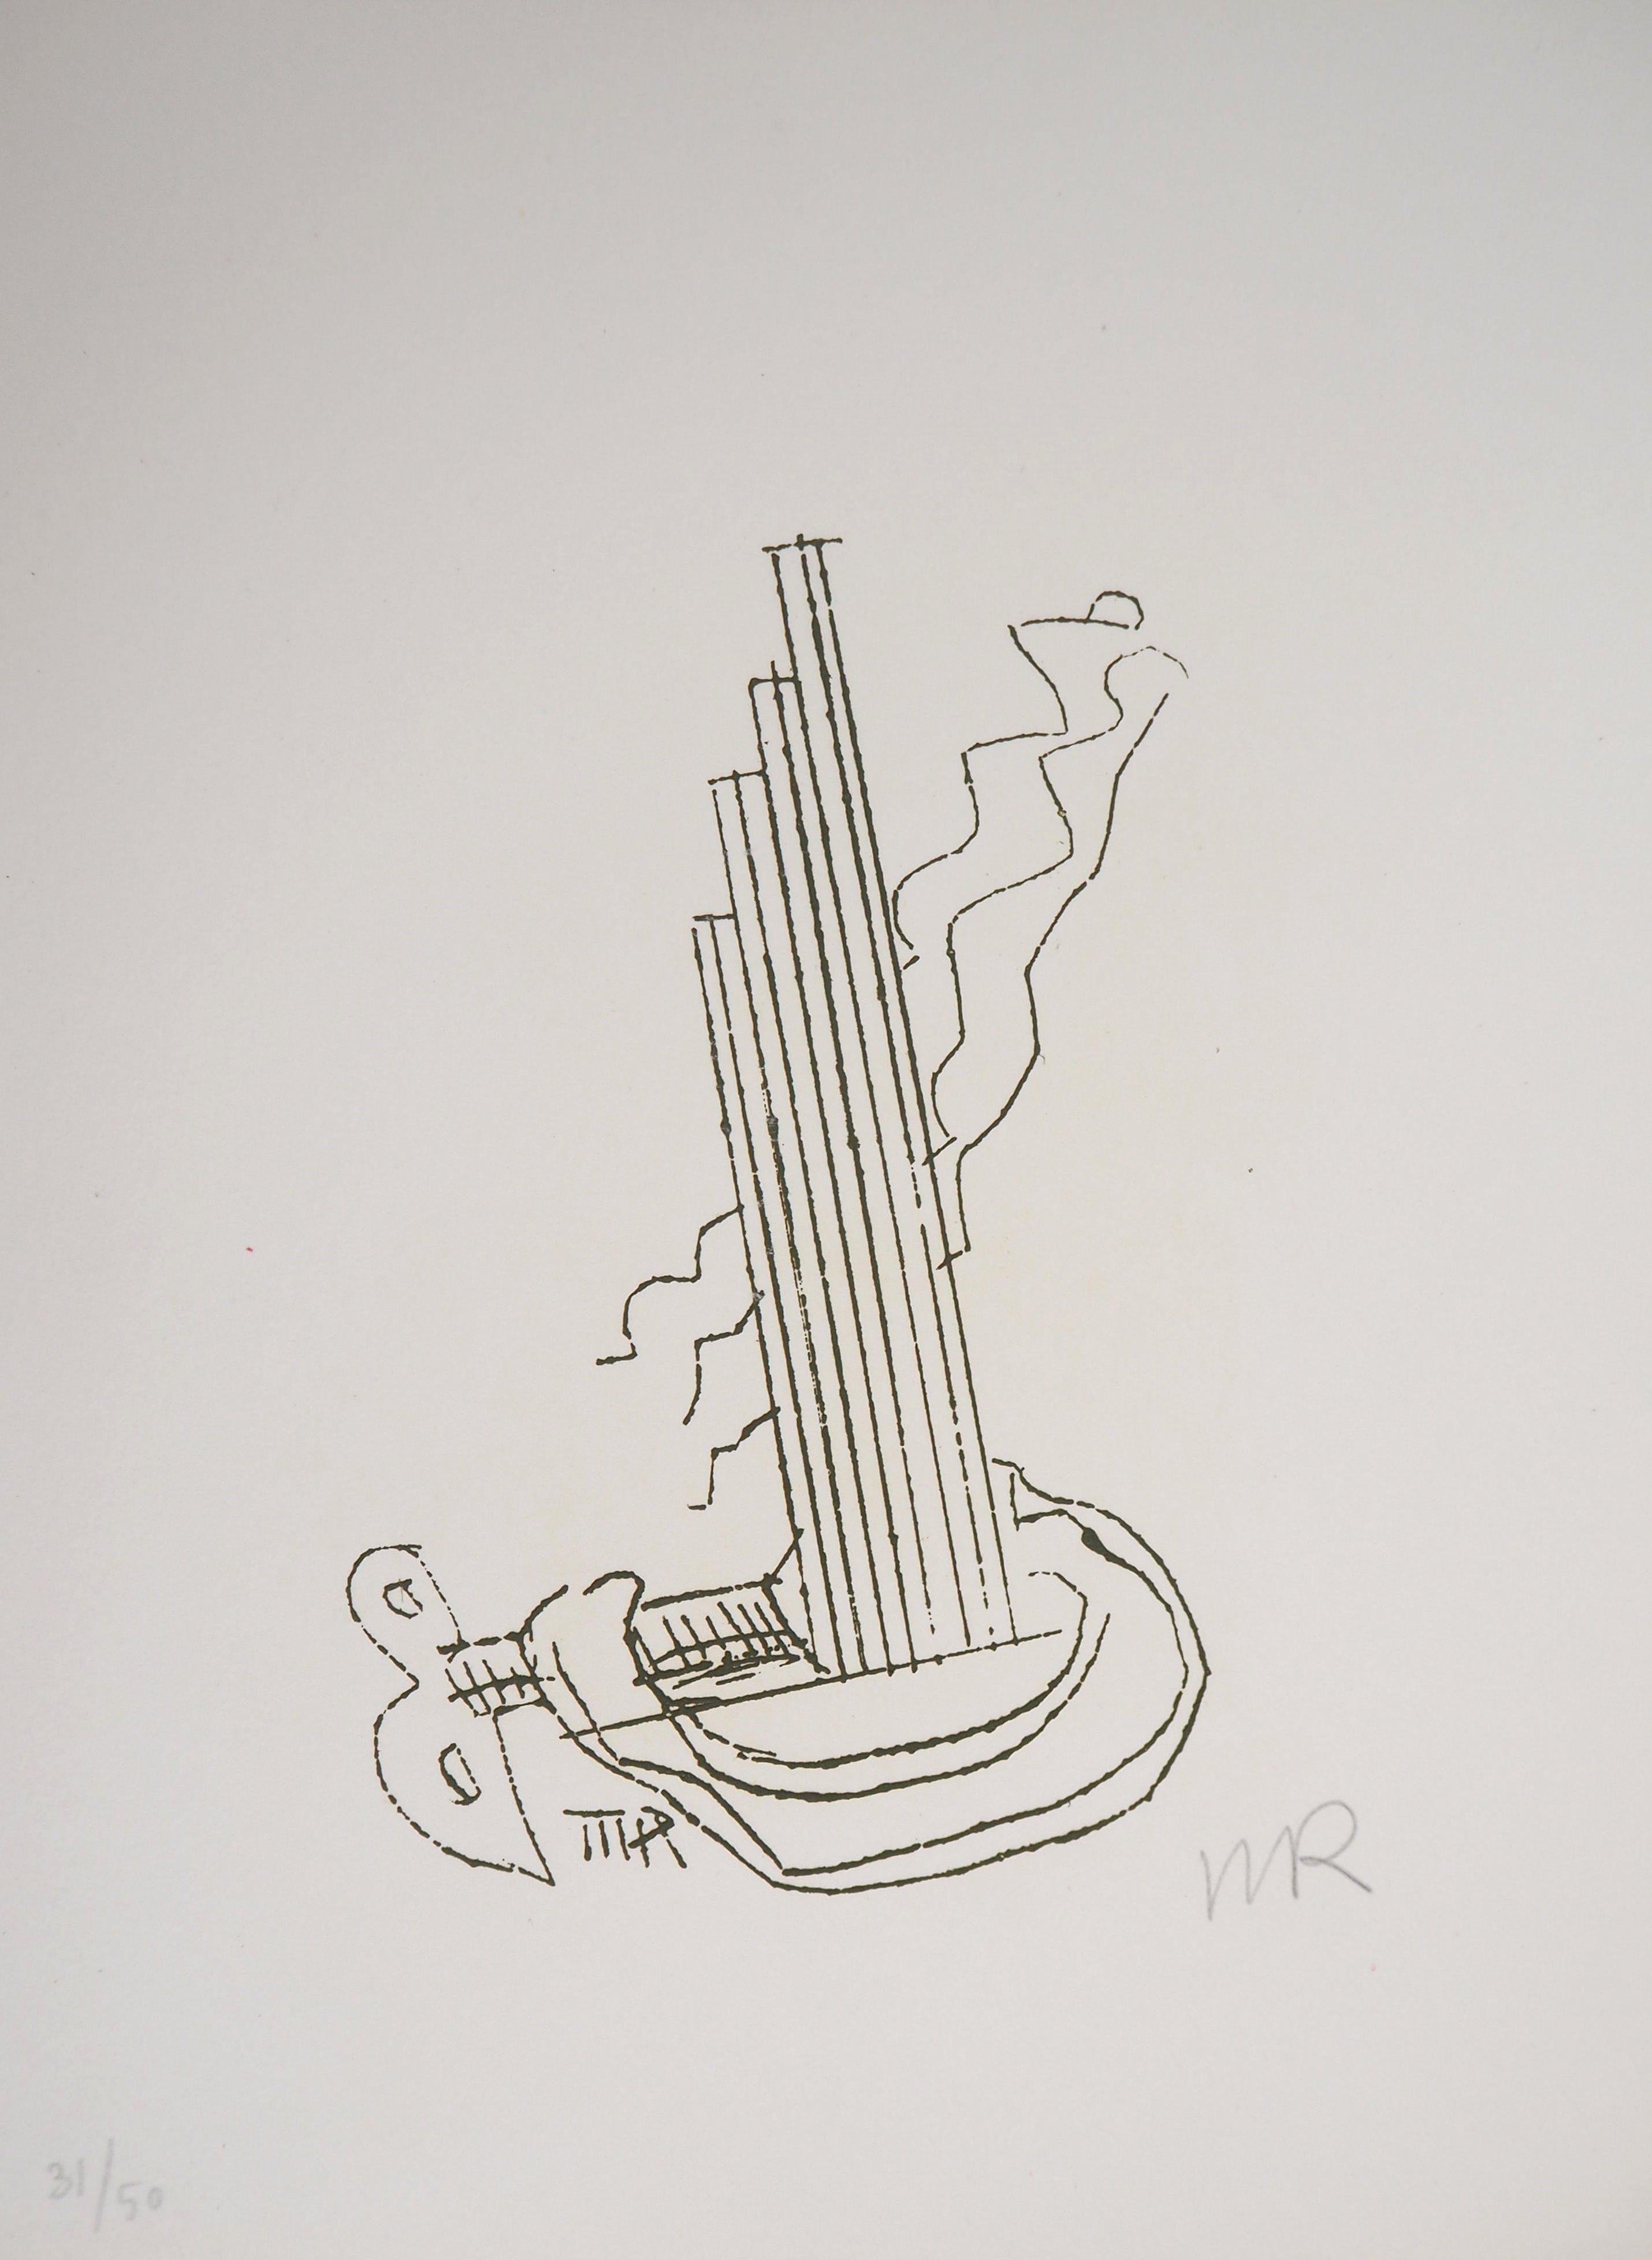 Man Ray Abstract Print – realistisches Maschinenwerk, Fausta, 1969 - Original handsignierte Radierung